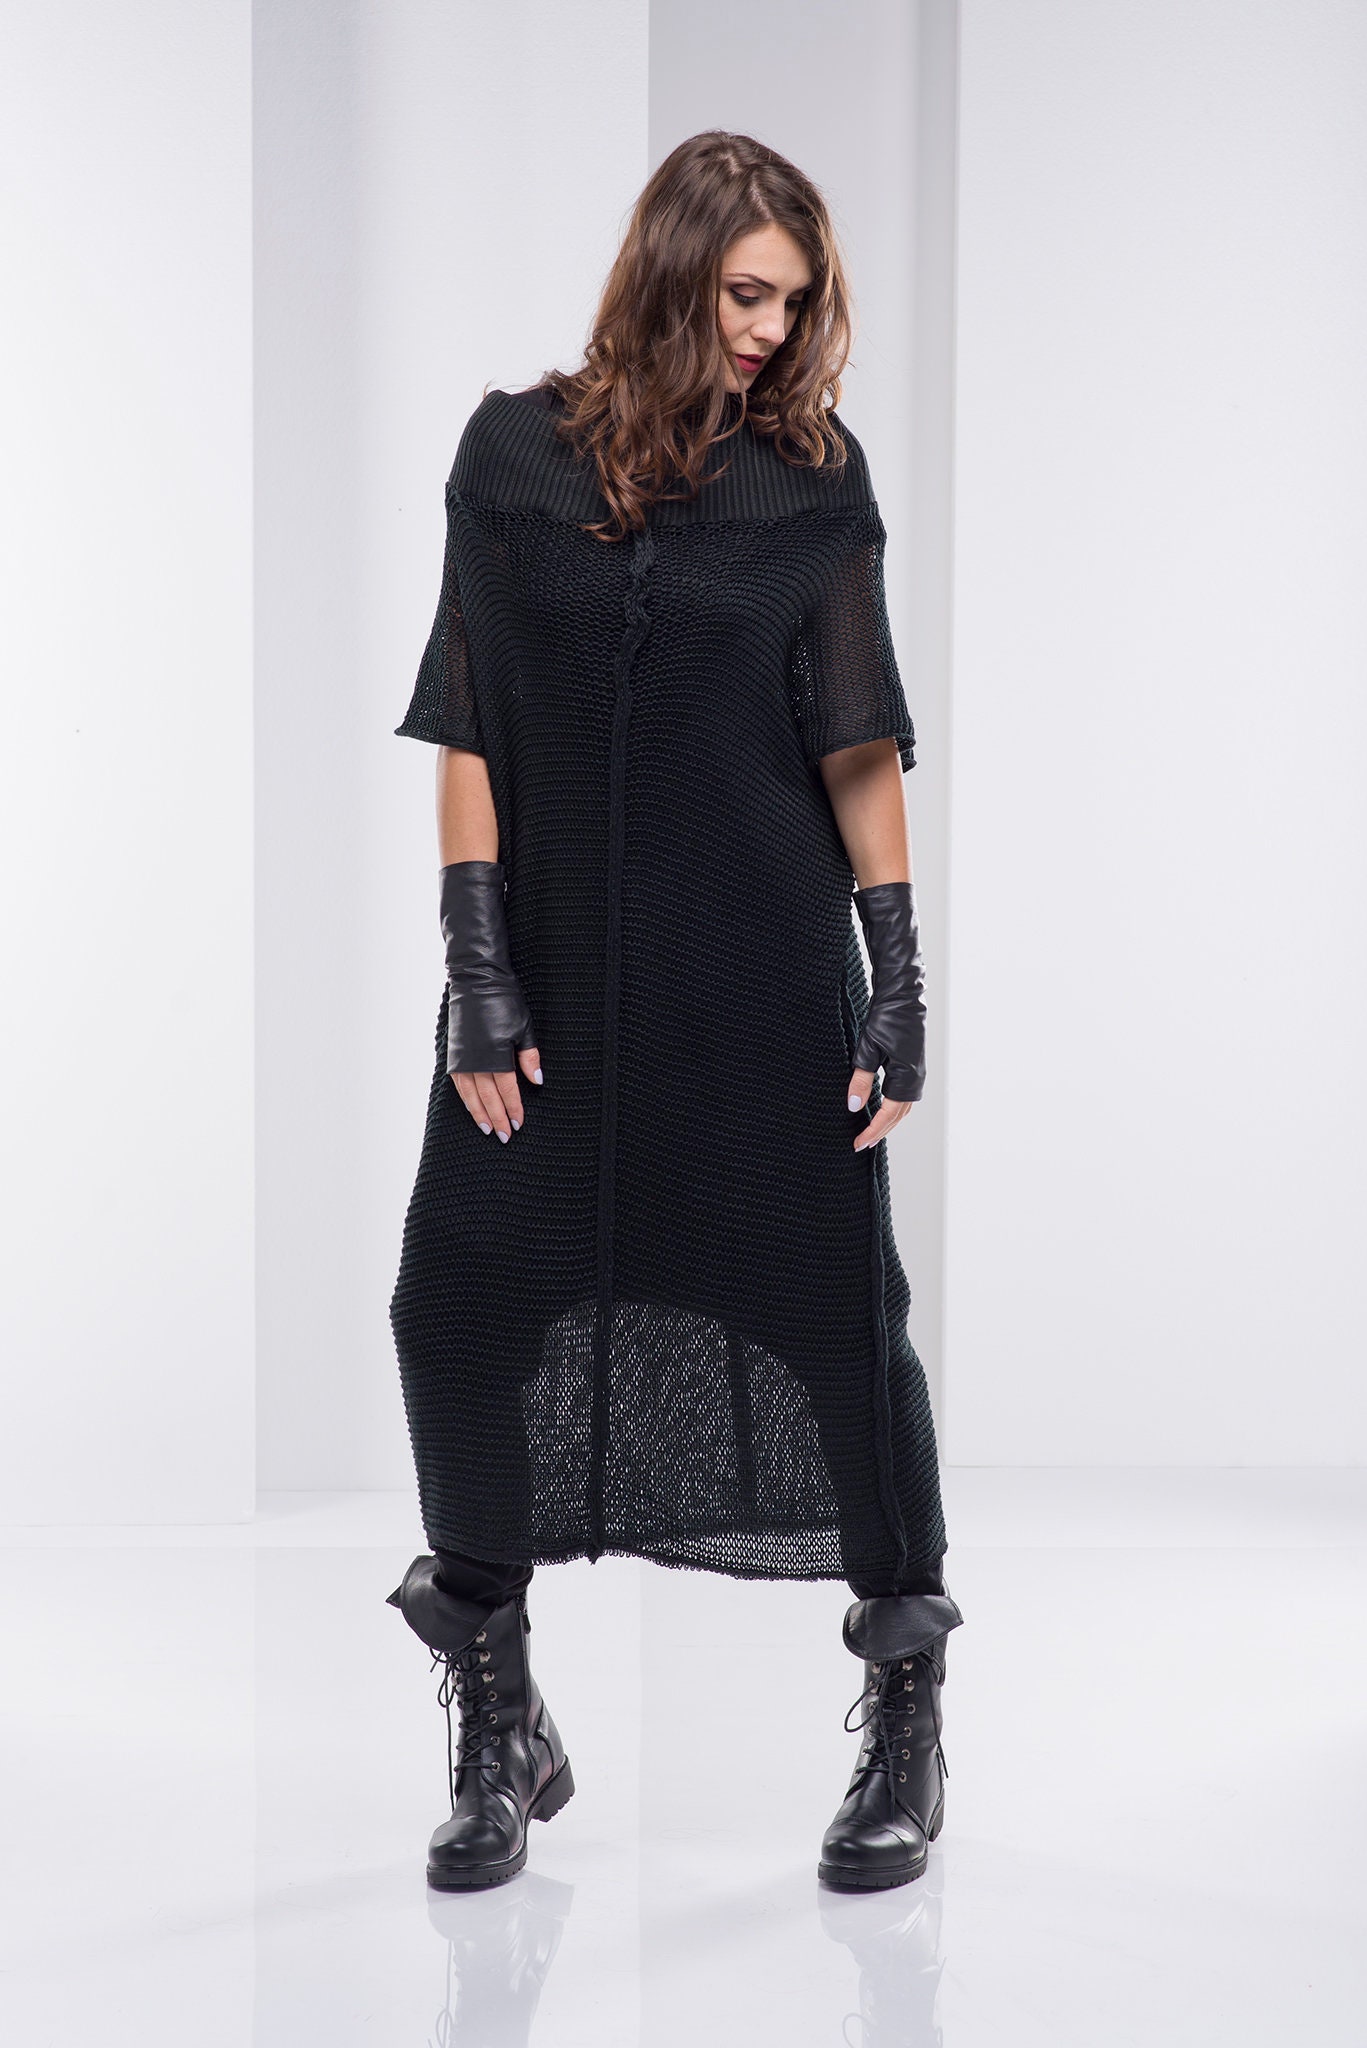 Knitted Tunic Dress Long Knit Dress Black Sweater Dress | Etsy